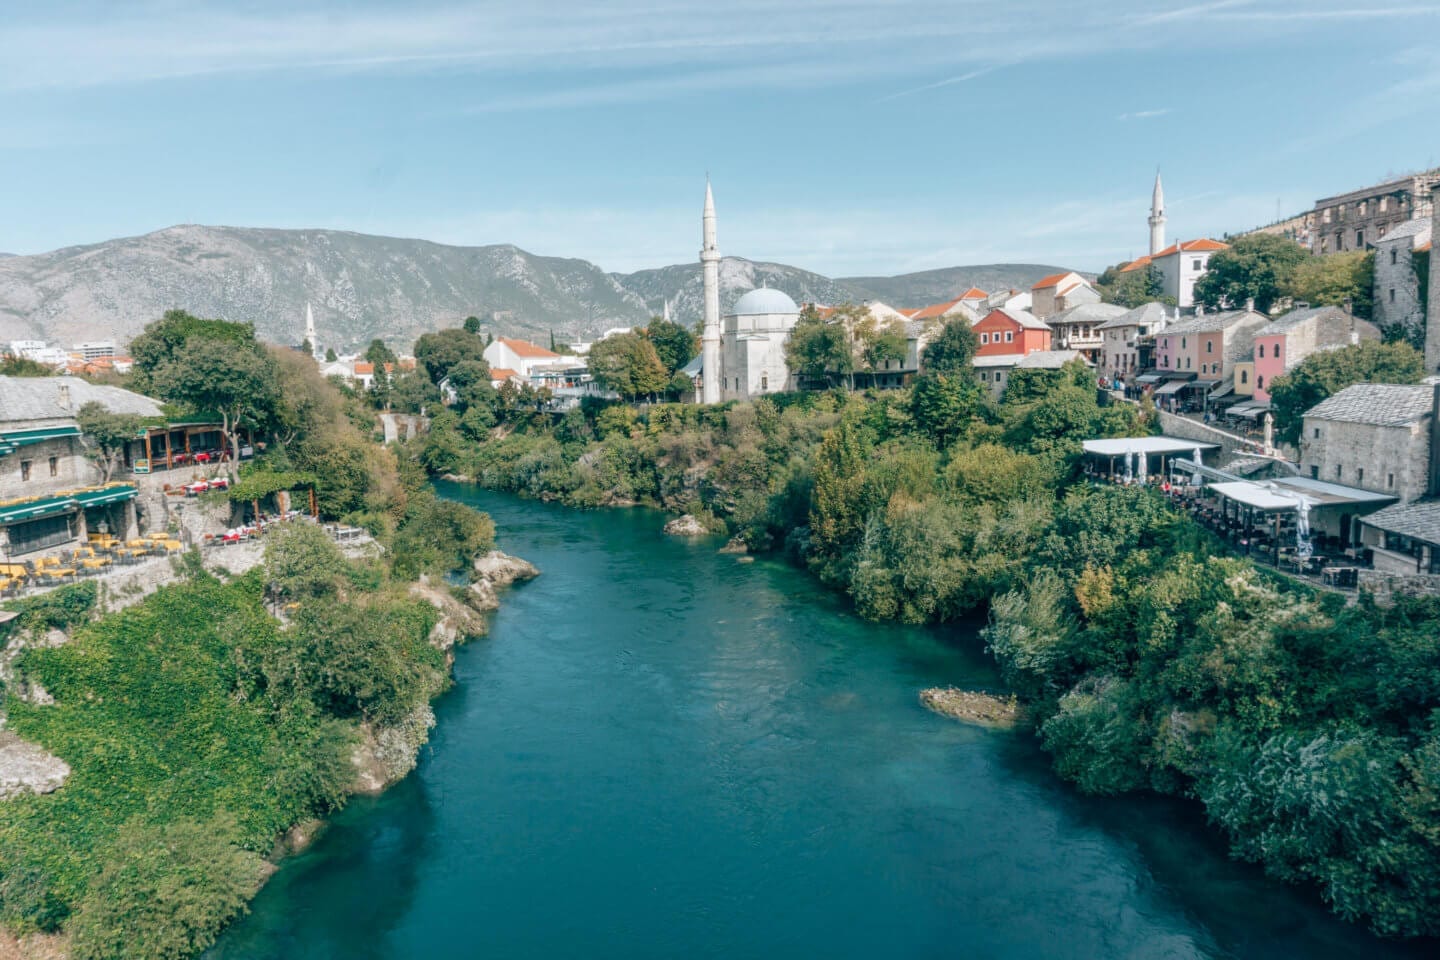 Landscape shot over the river of Mostar